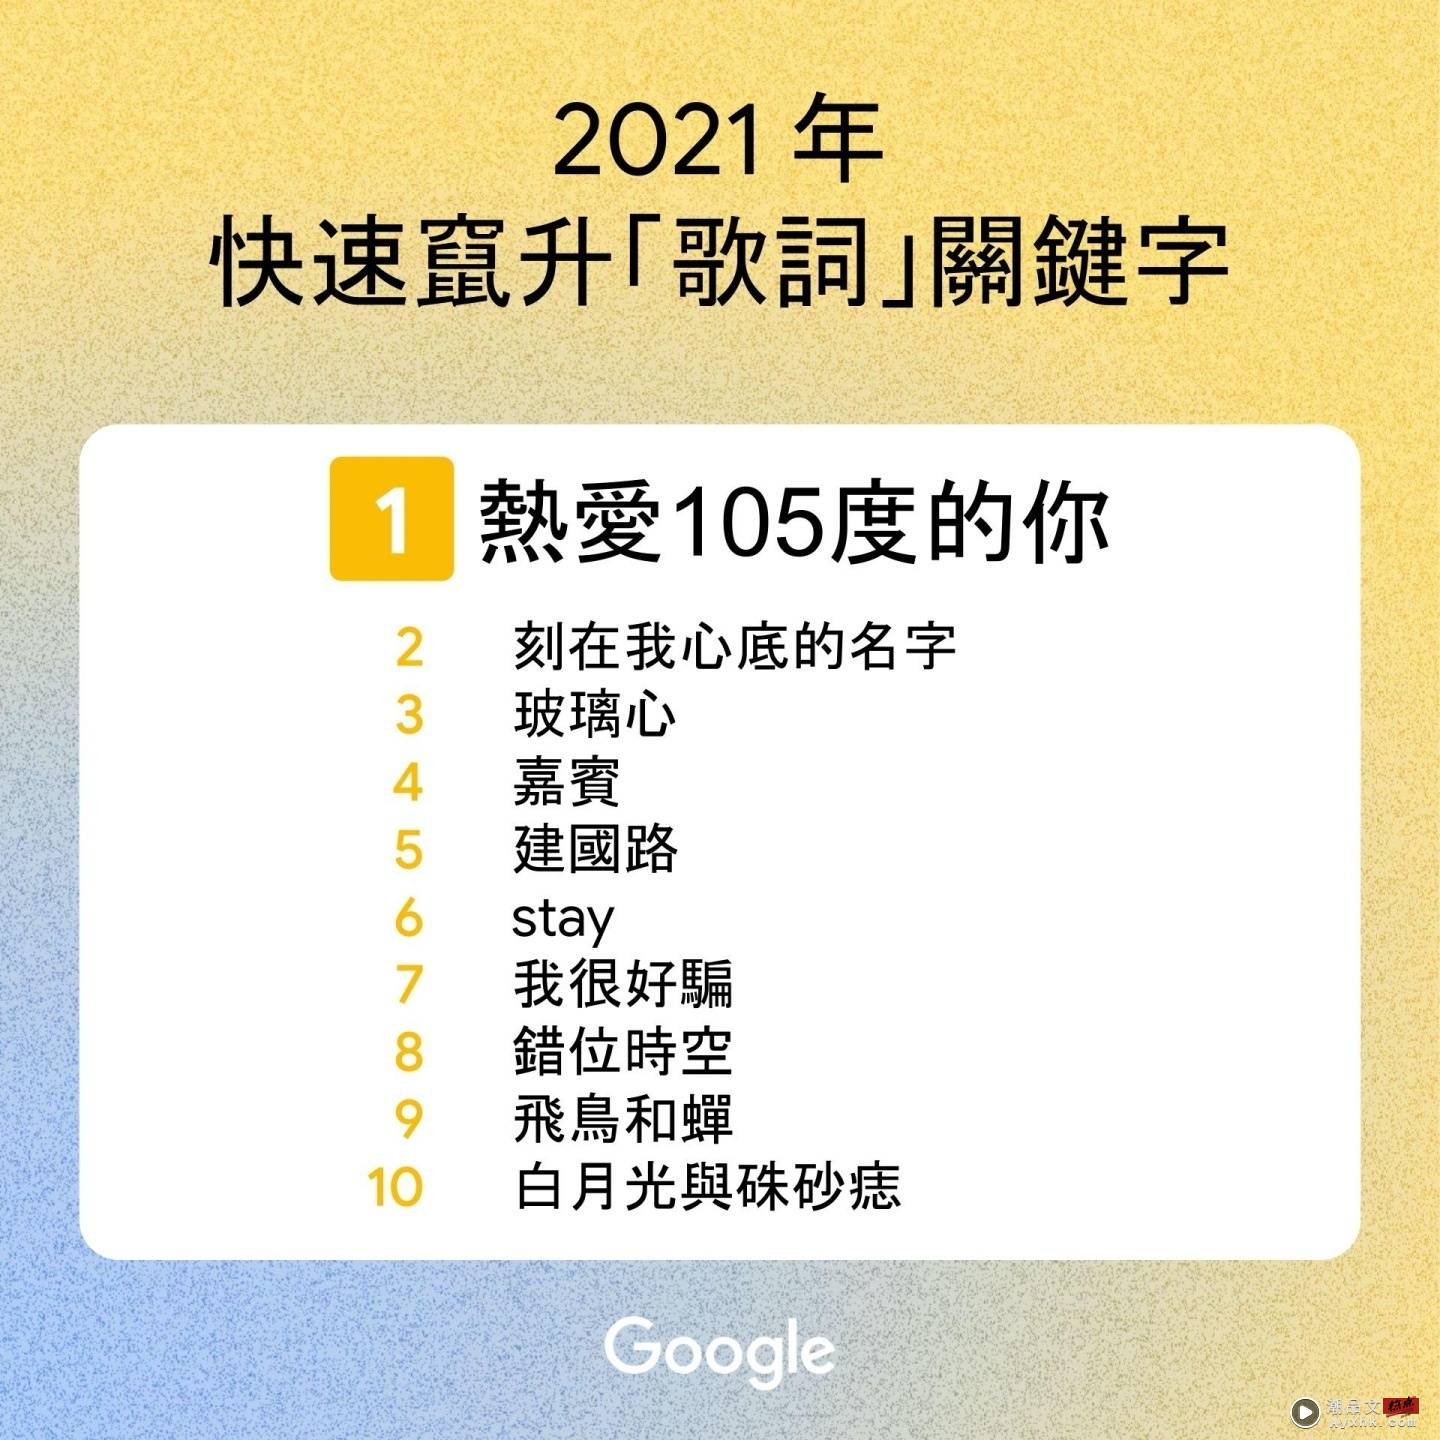 2021 年 Google 中国台湾搜寻排行出炉！‘ 戴资颖 ’登热搜第一，年度关键字是‘ NBA ’ 数码科技 图6张